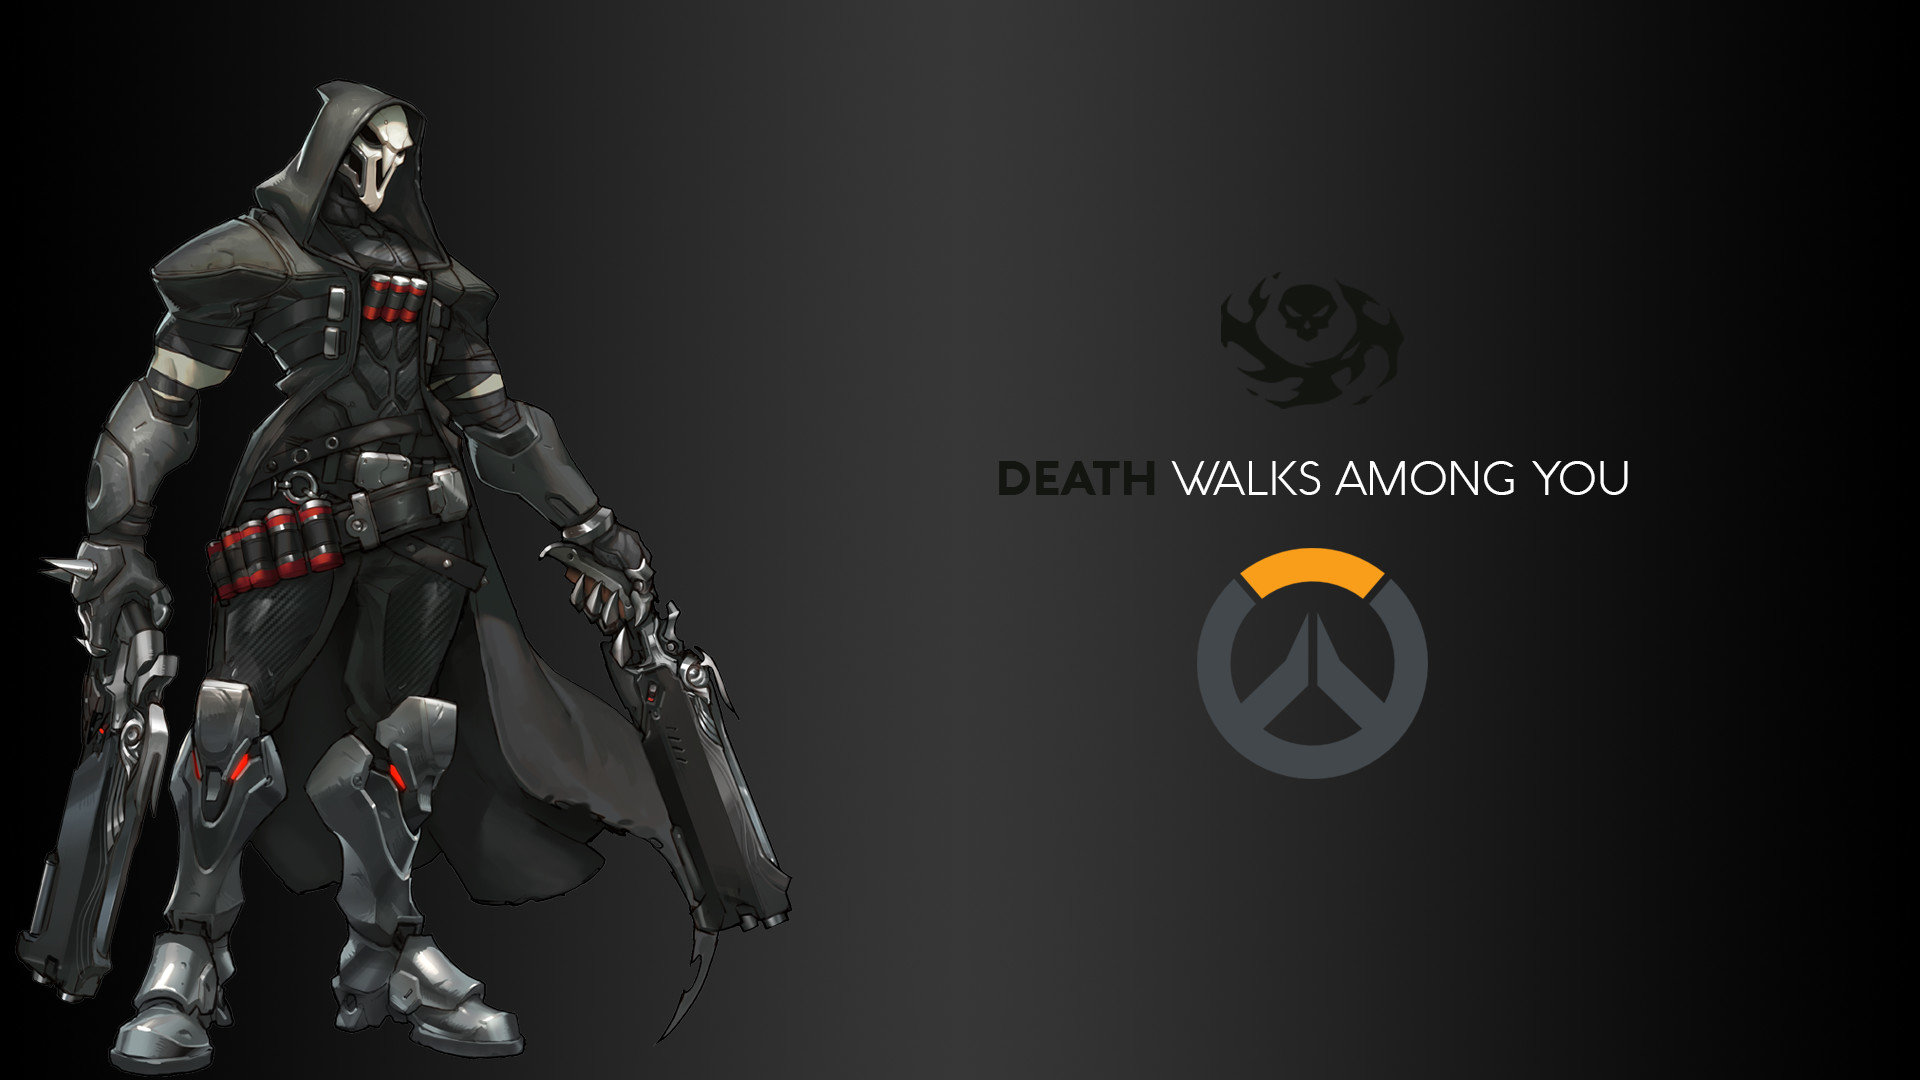 Reaper Overwatch Wallpapers Hd For Desktop Backgrounds